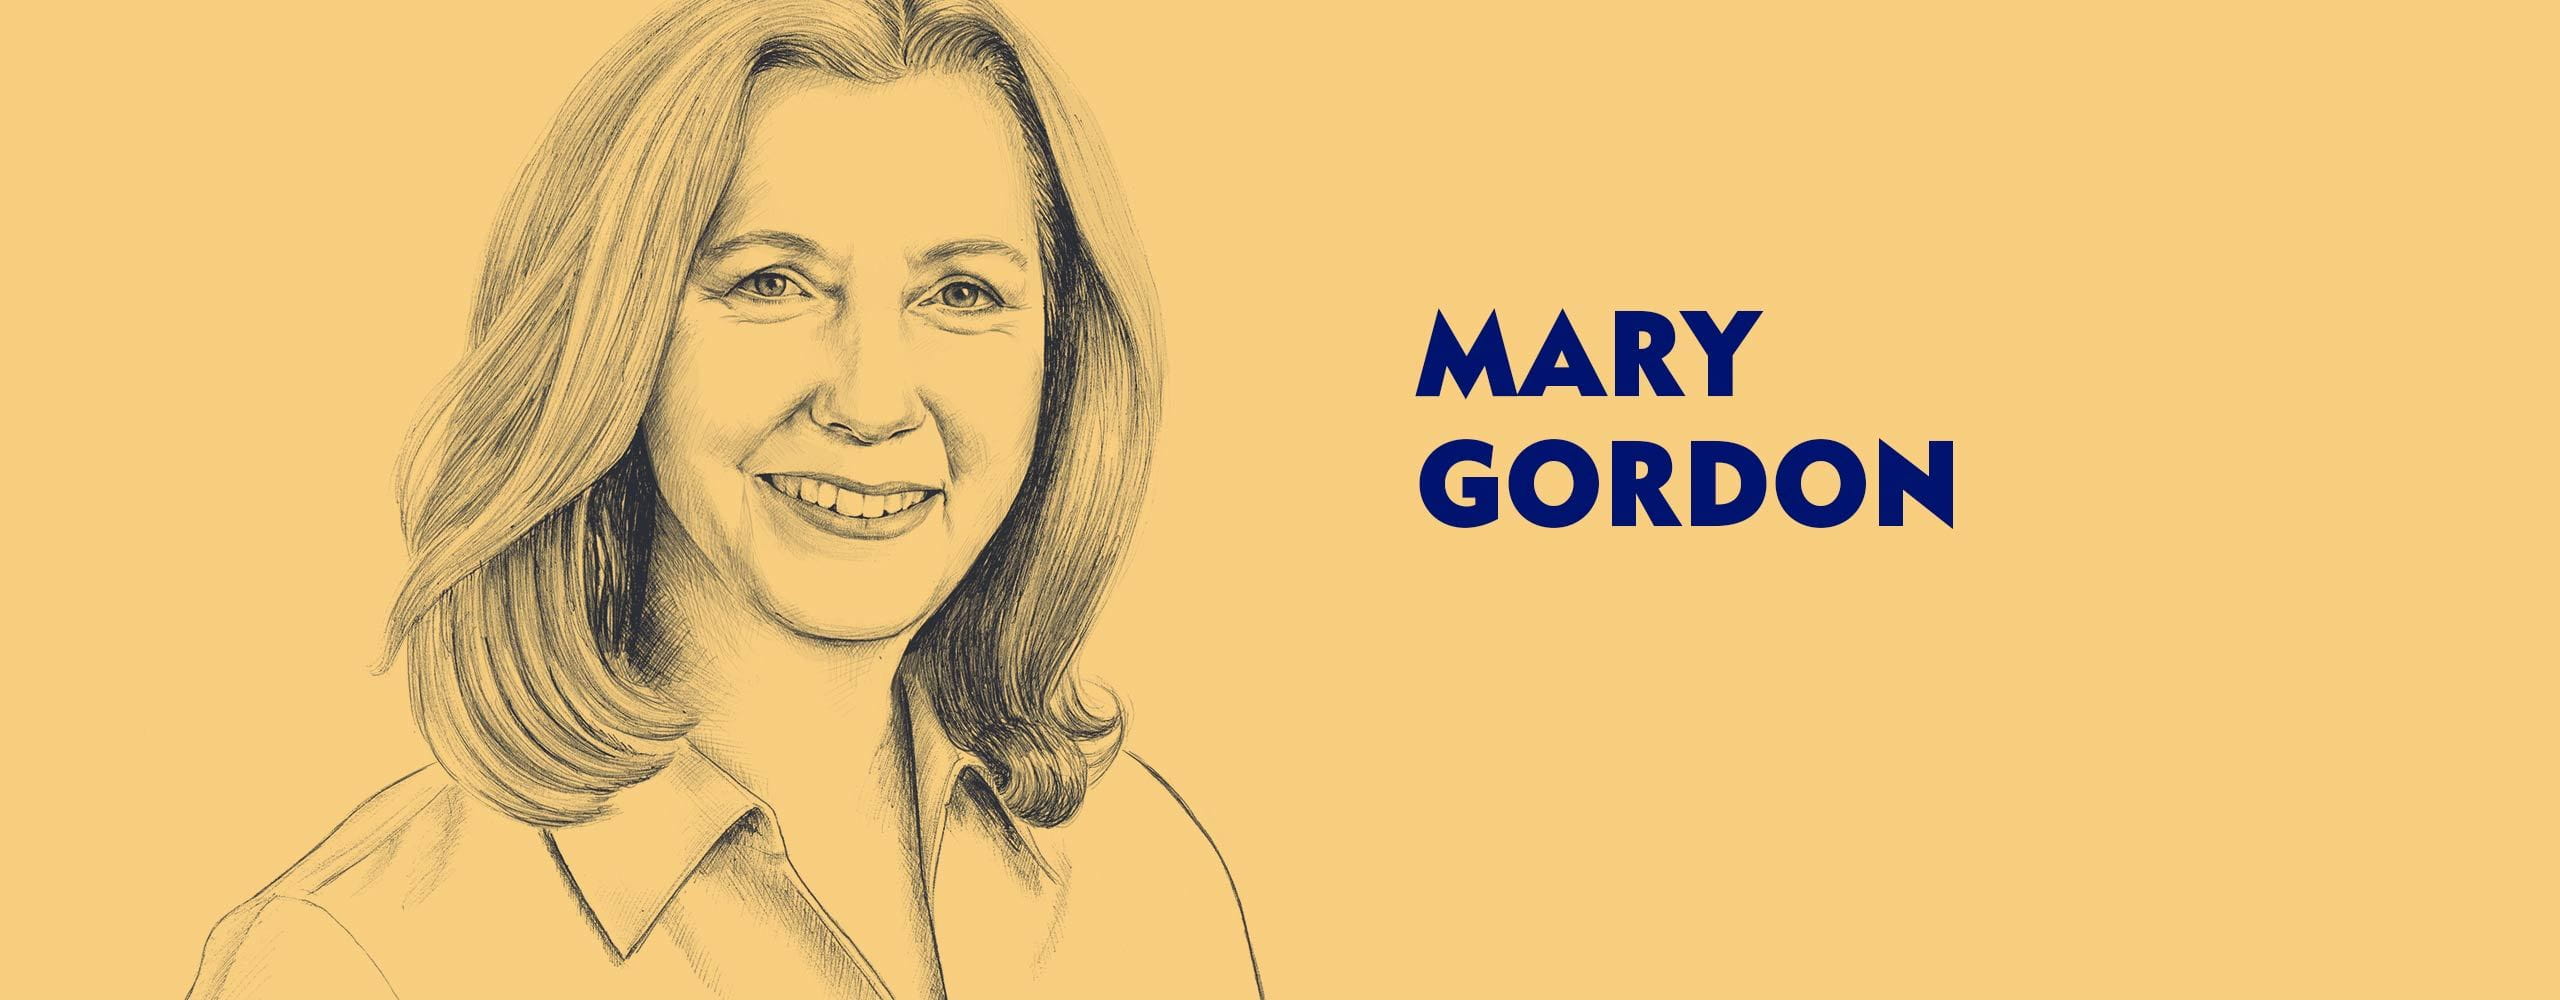 Wywiad z Mary Gordon